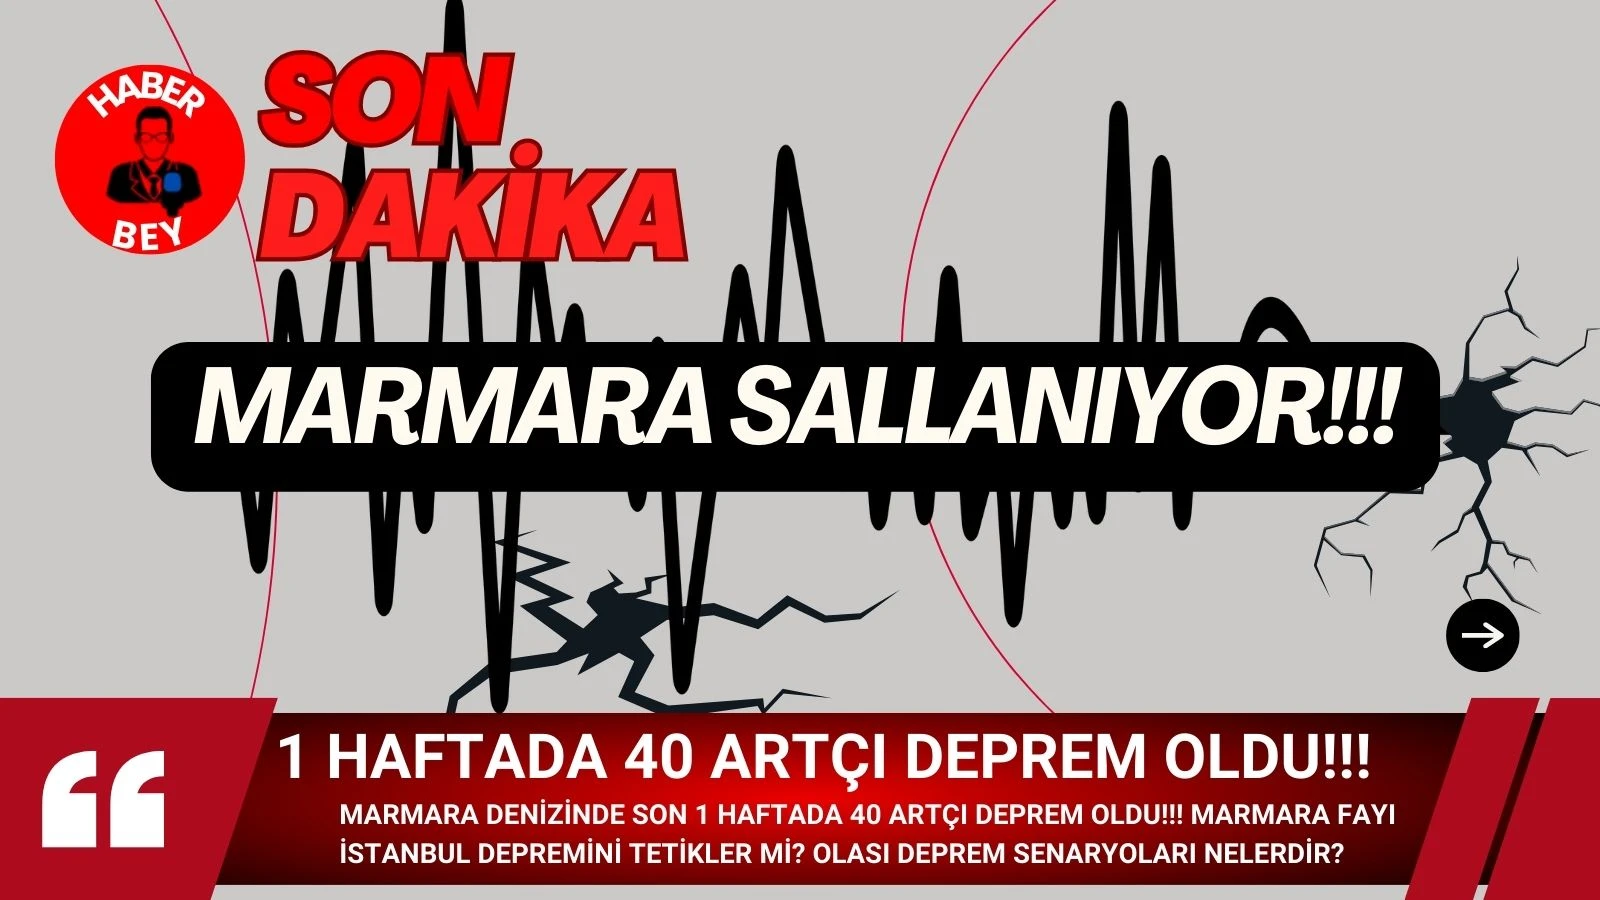 Marmara Denizinde Son 1 Haftada 40 Artçı Deprem oldu!!!